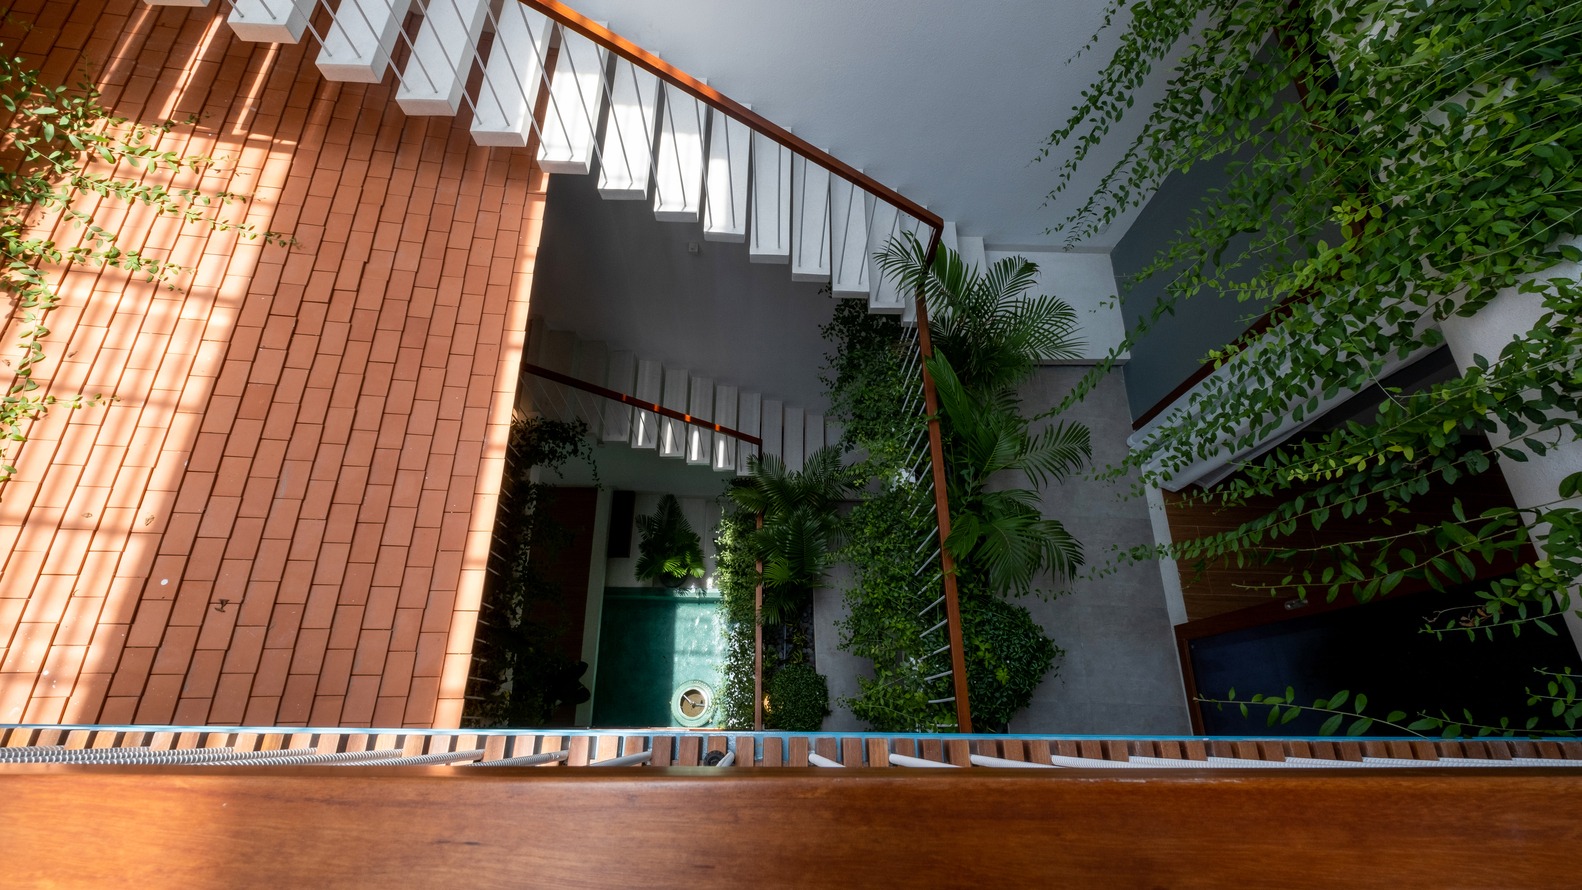 hình ảnh khu vực cầu thang, giếng trời trồng cây xanh